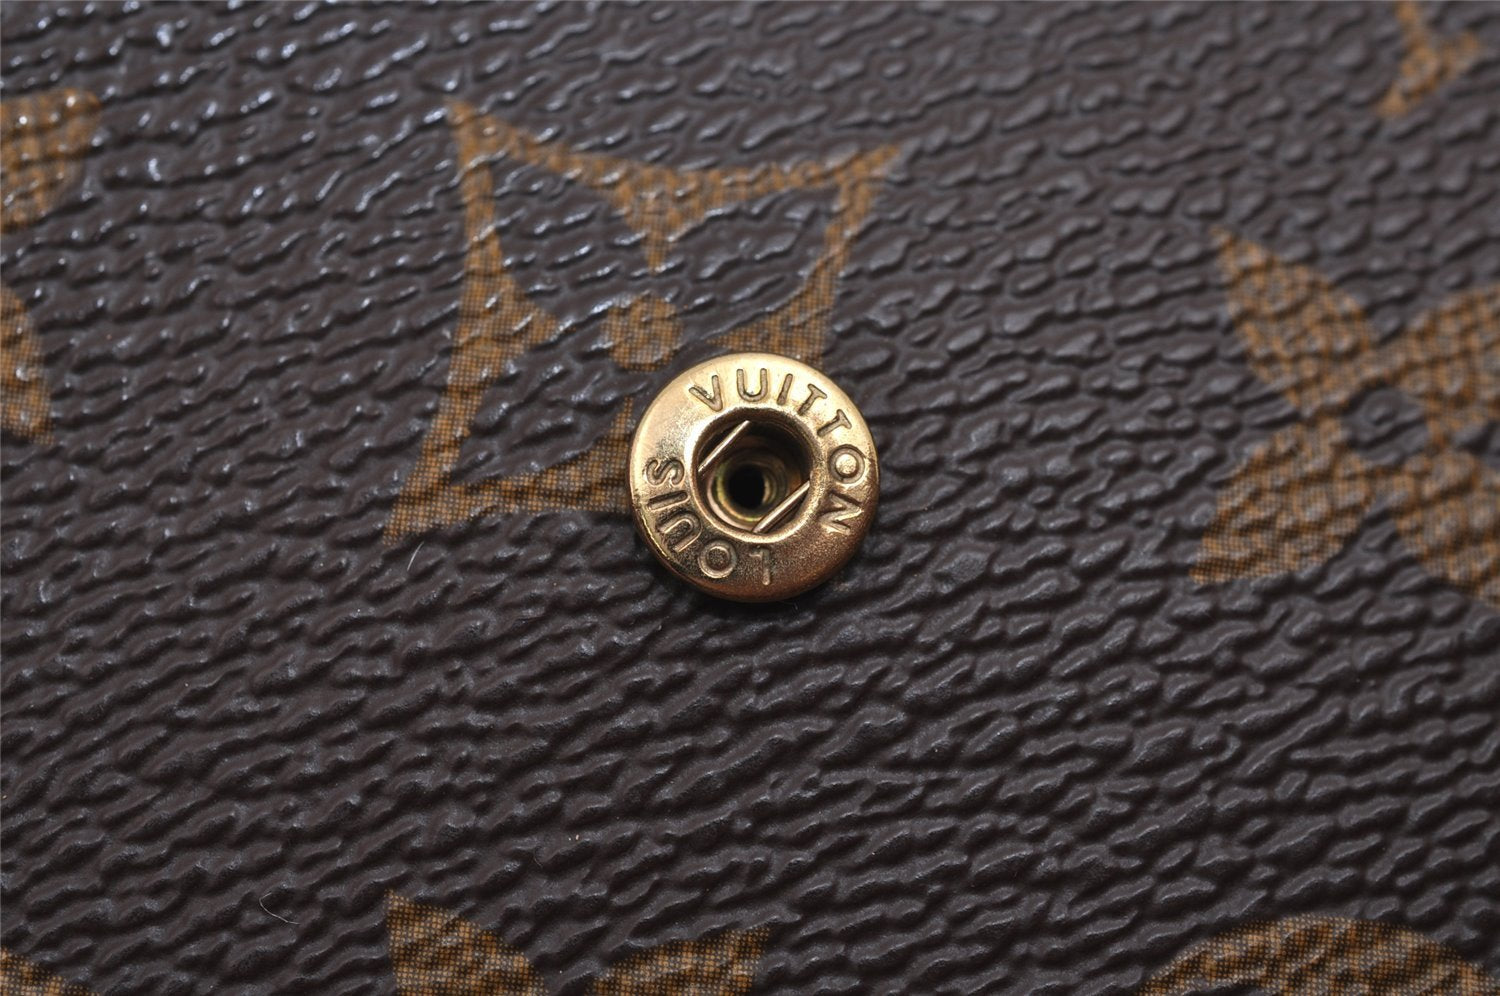 Authentic Louis Vuitton Monogram Pochette Pass Pole M60135 Trifold Wallet 2940J